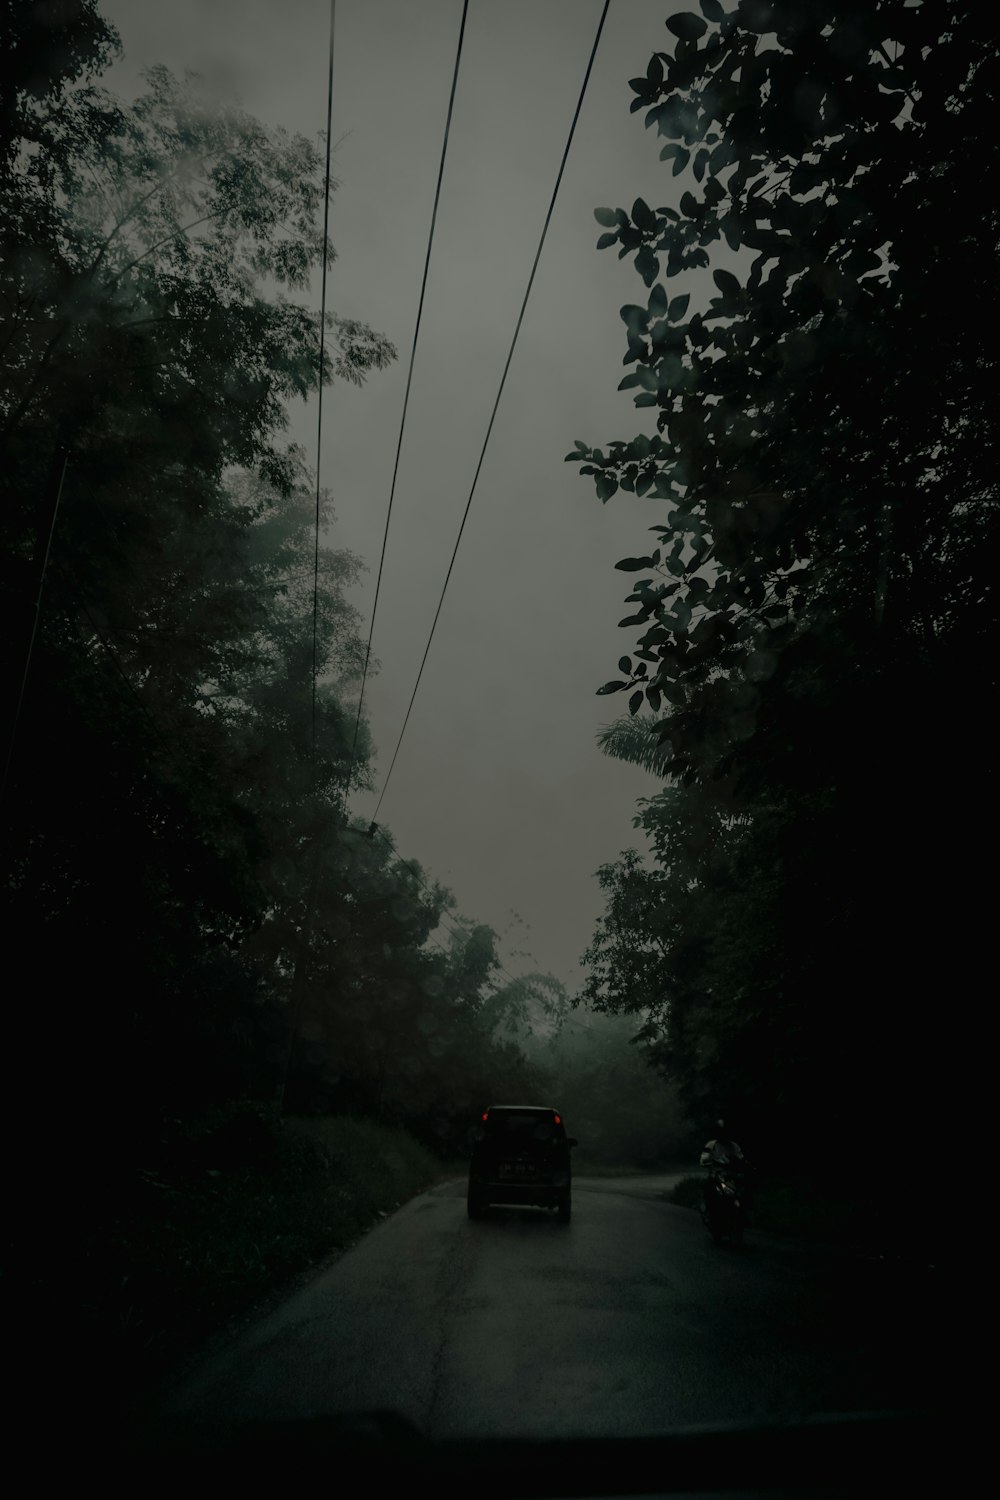 a car is driving down a dark road